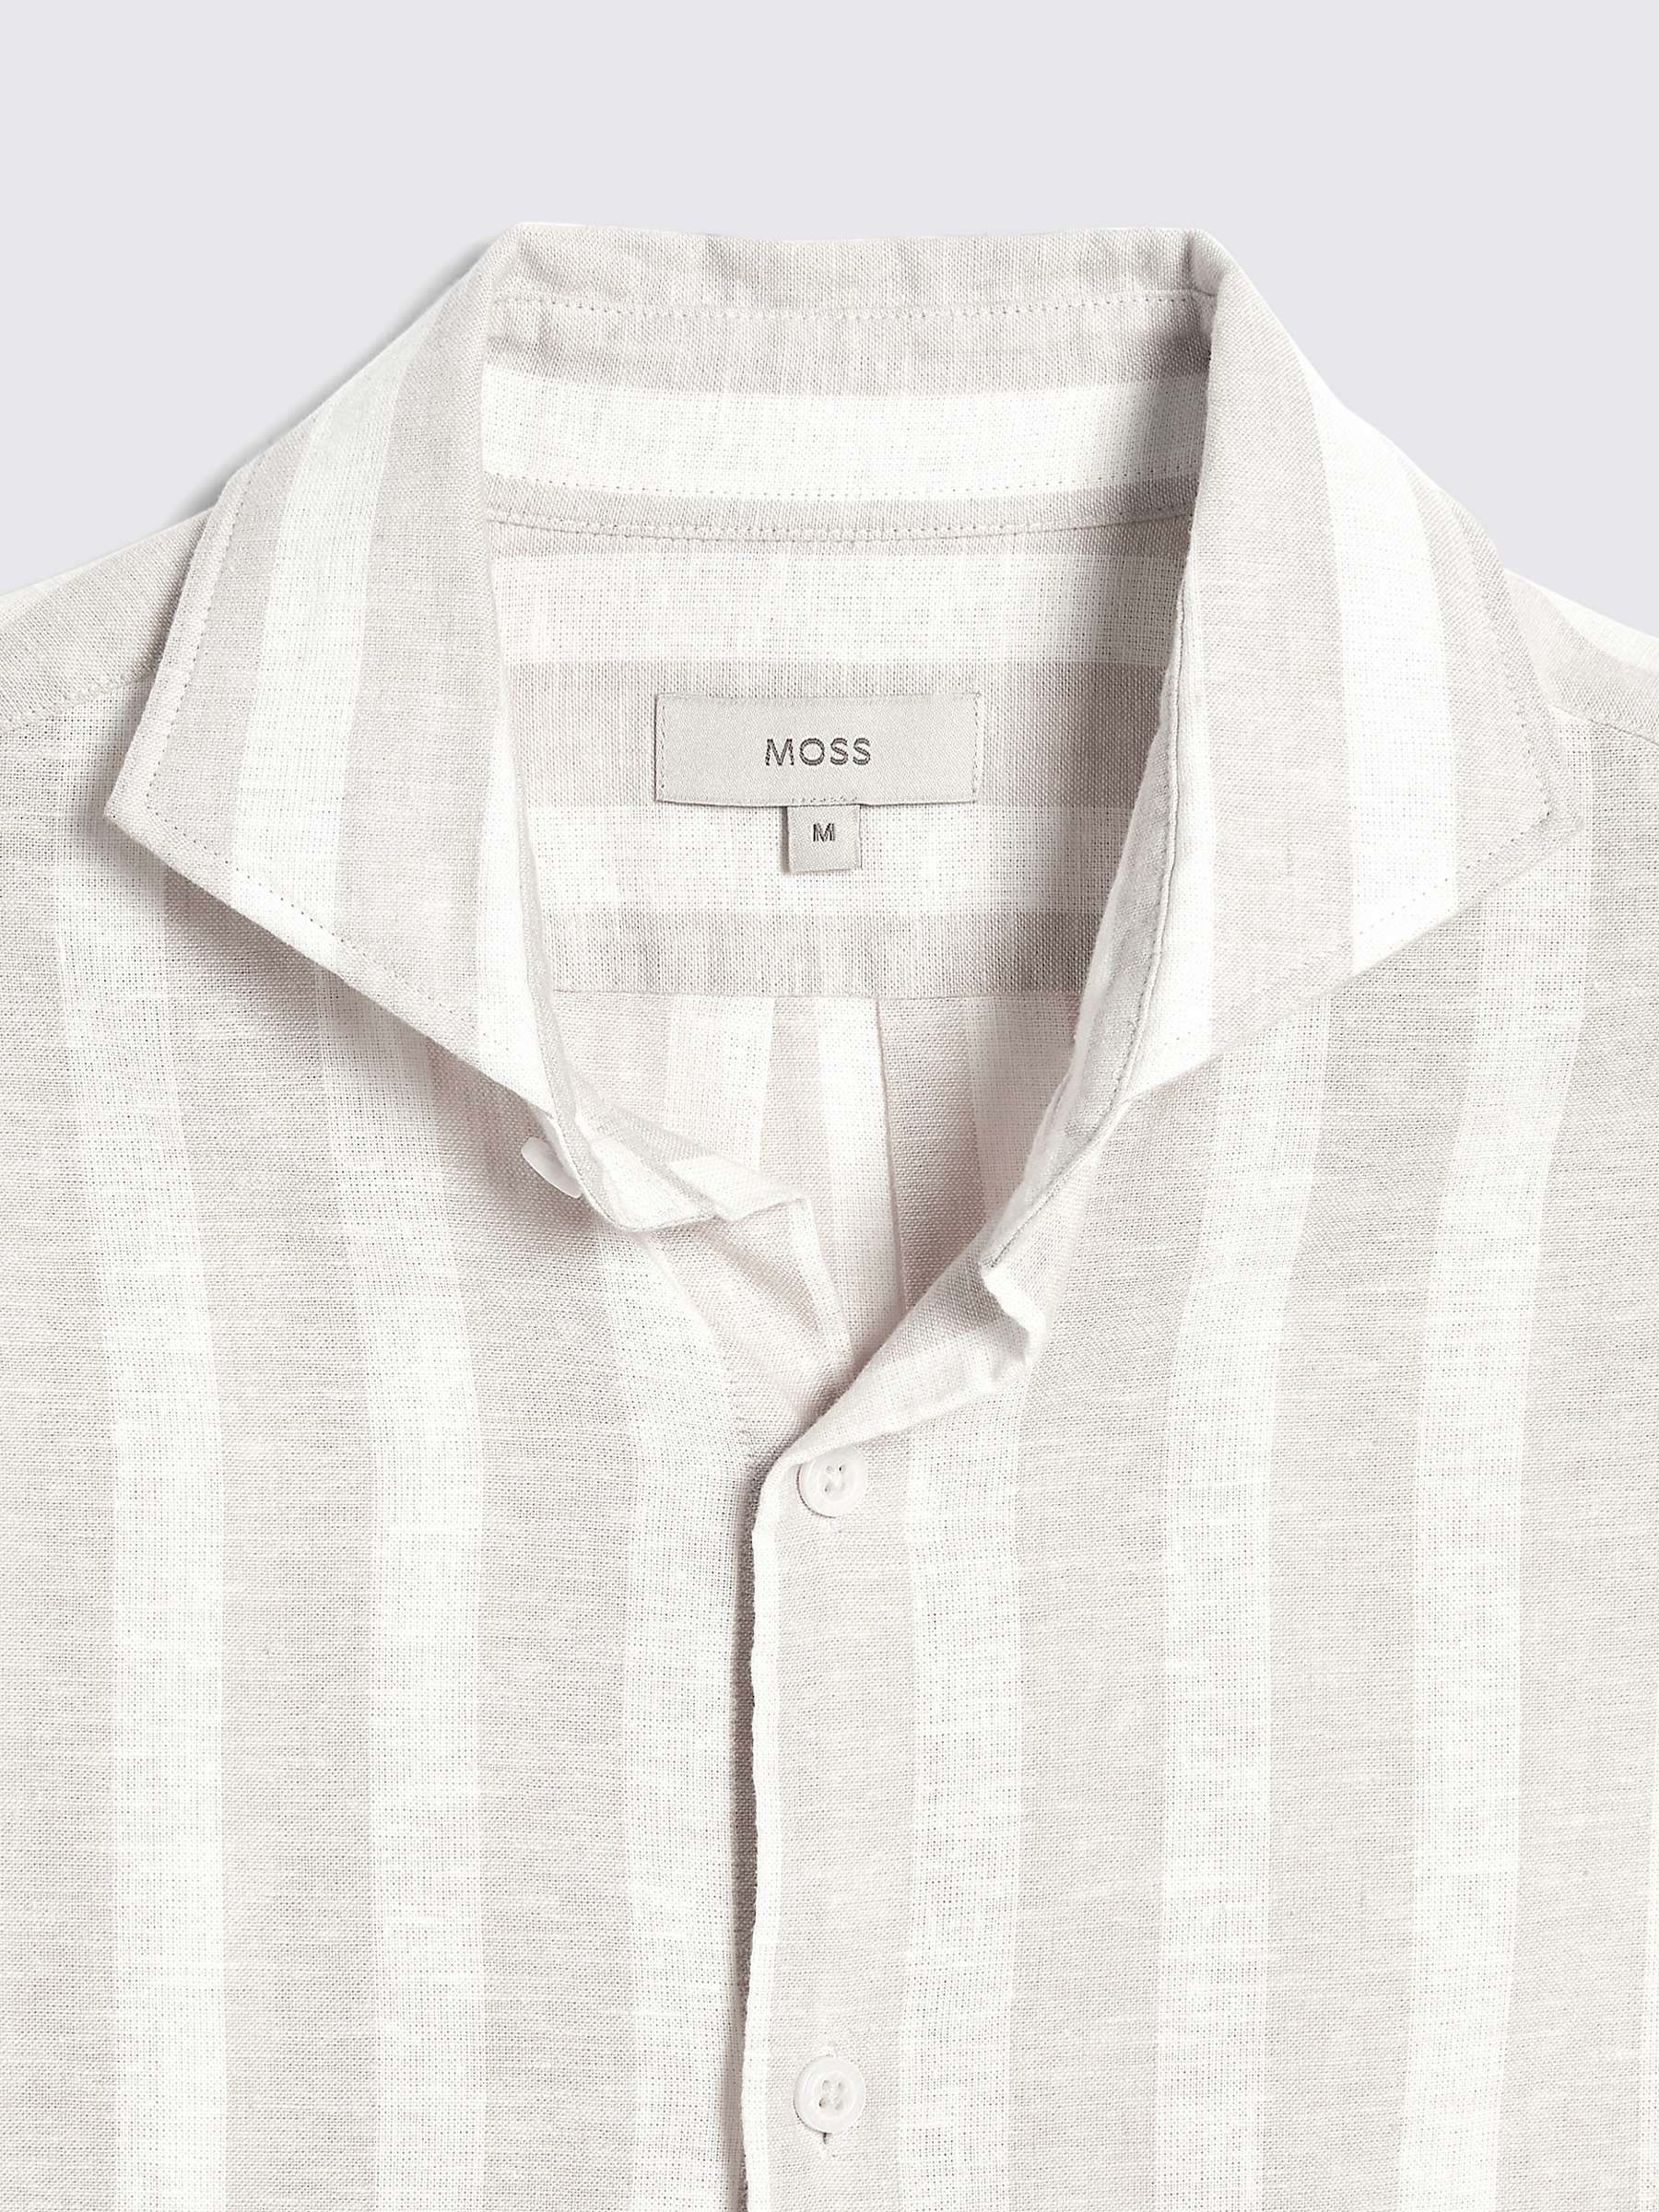 Buy Moss Linen Blend Bengal Stripe Shirt Online at johnlewis.com